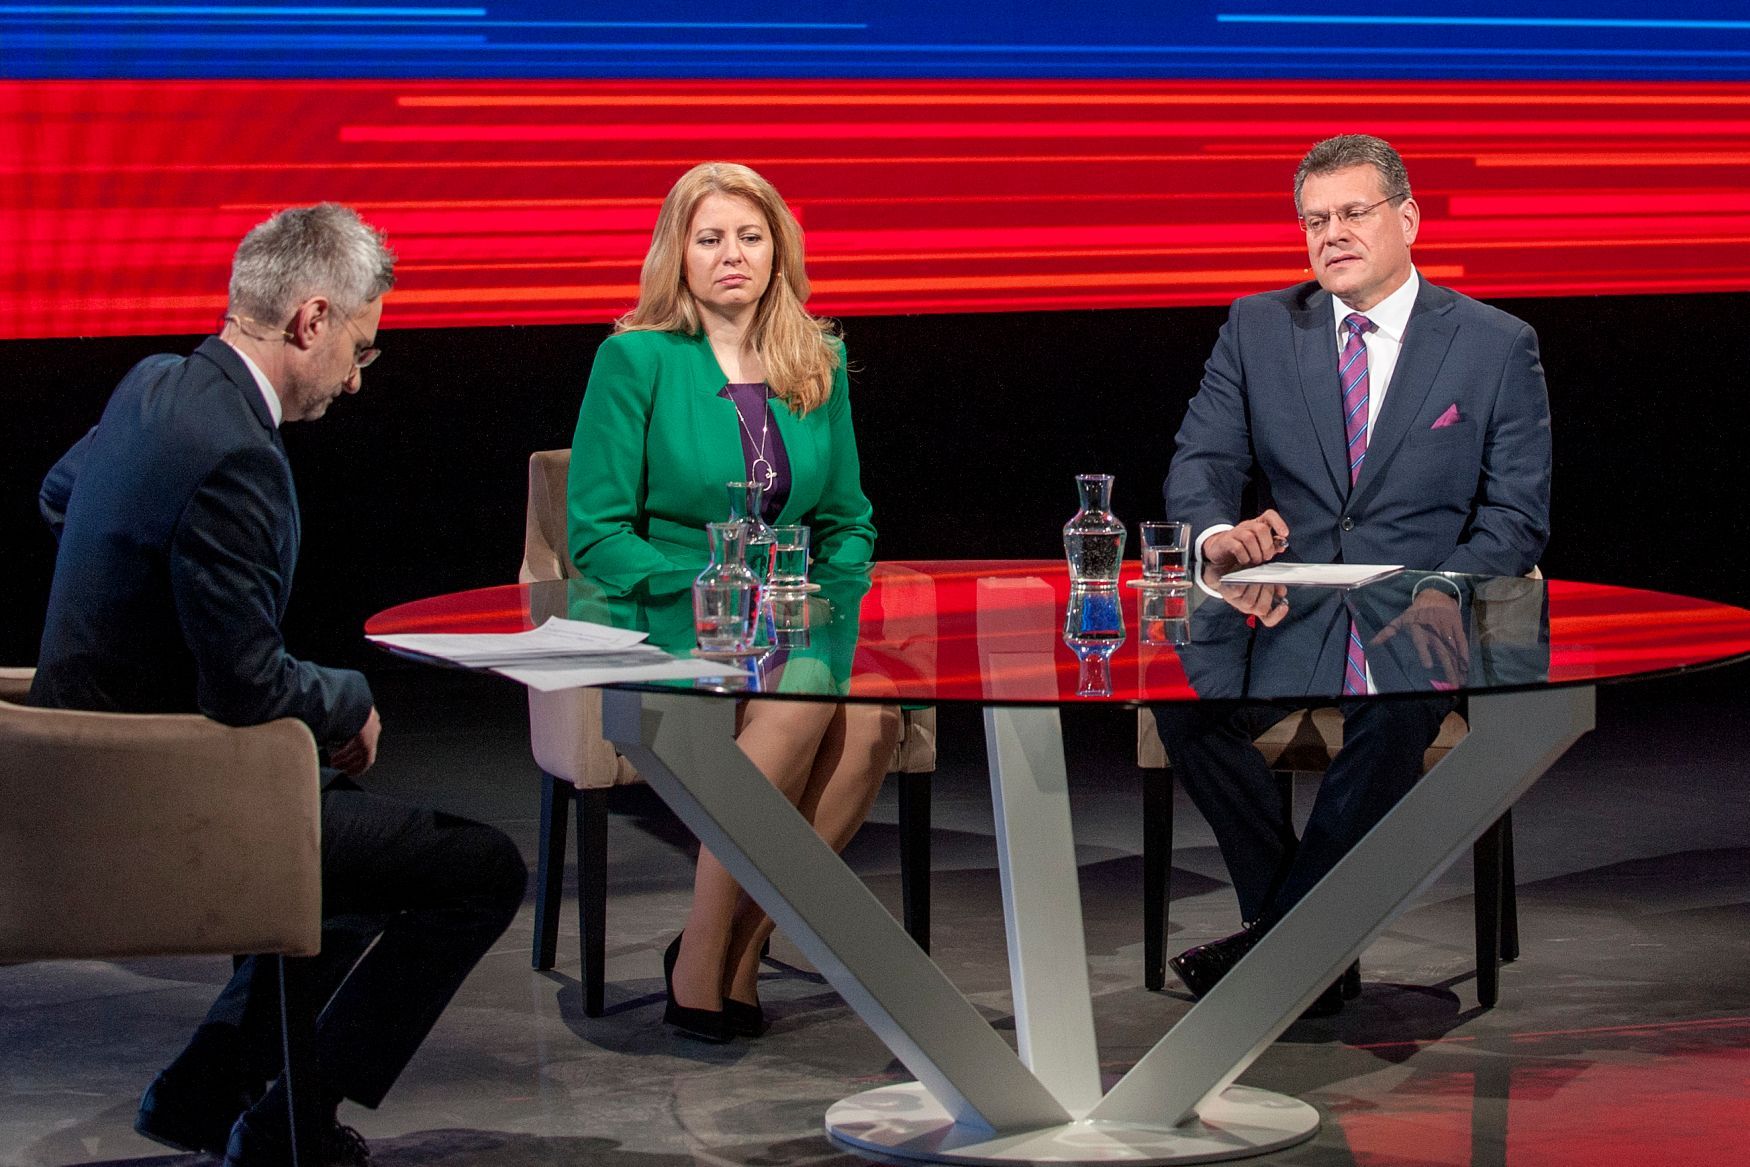 Slovenské prezidentské volby 2019